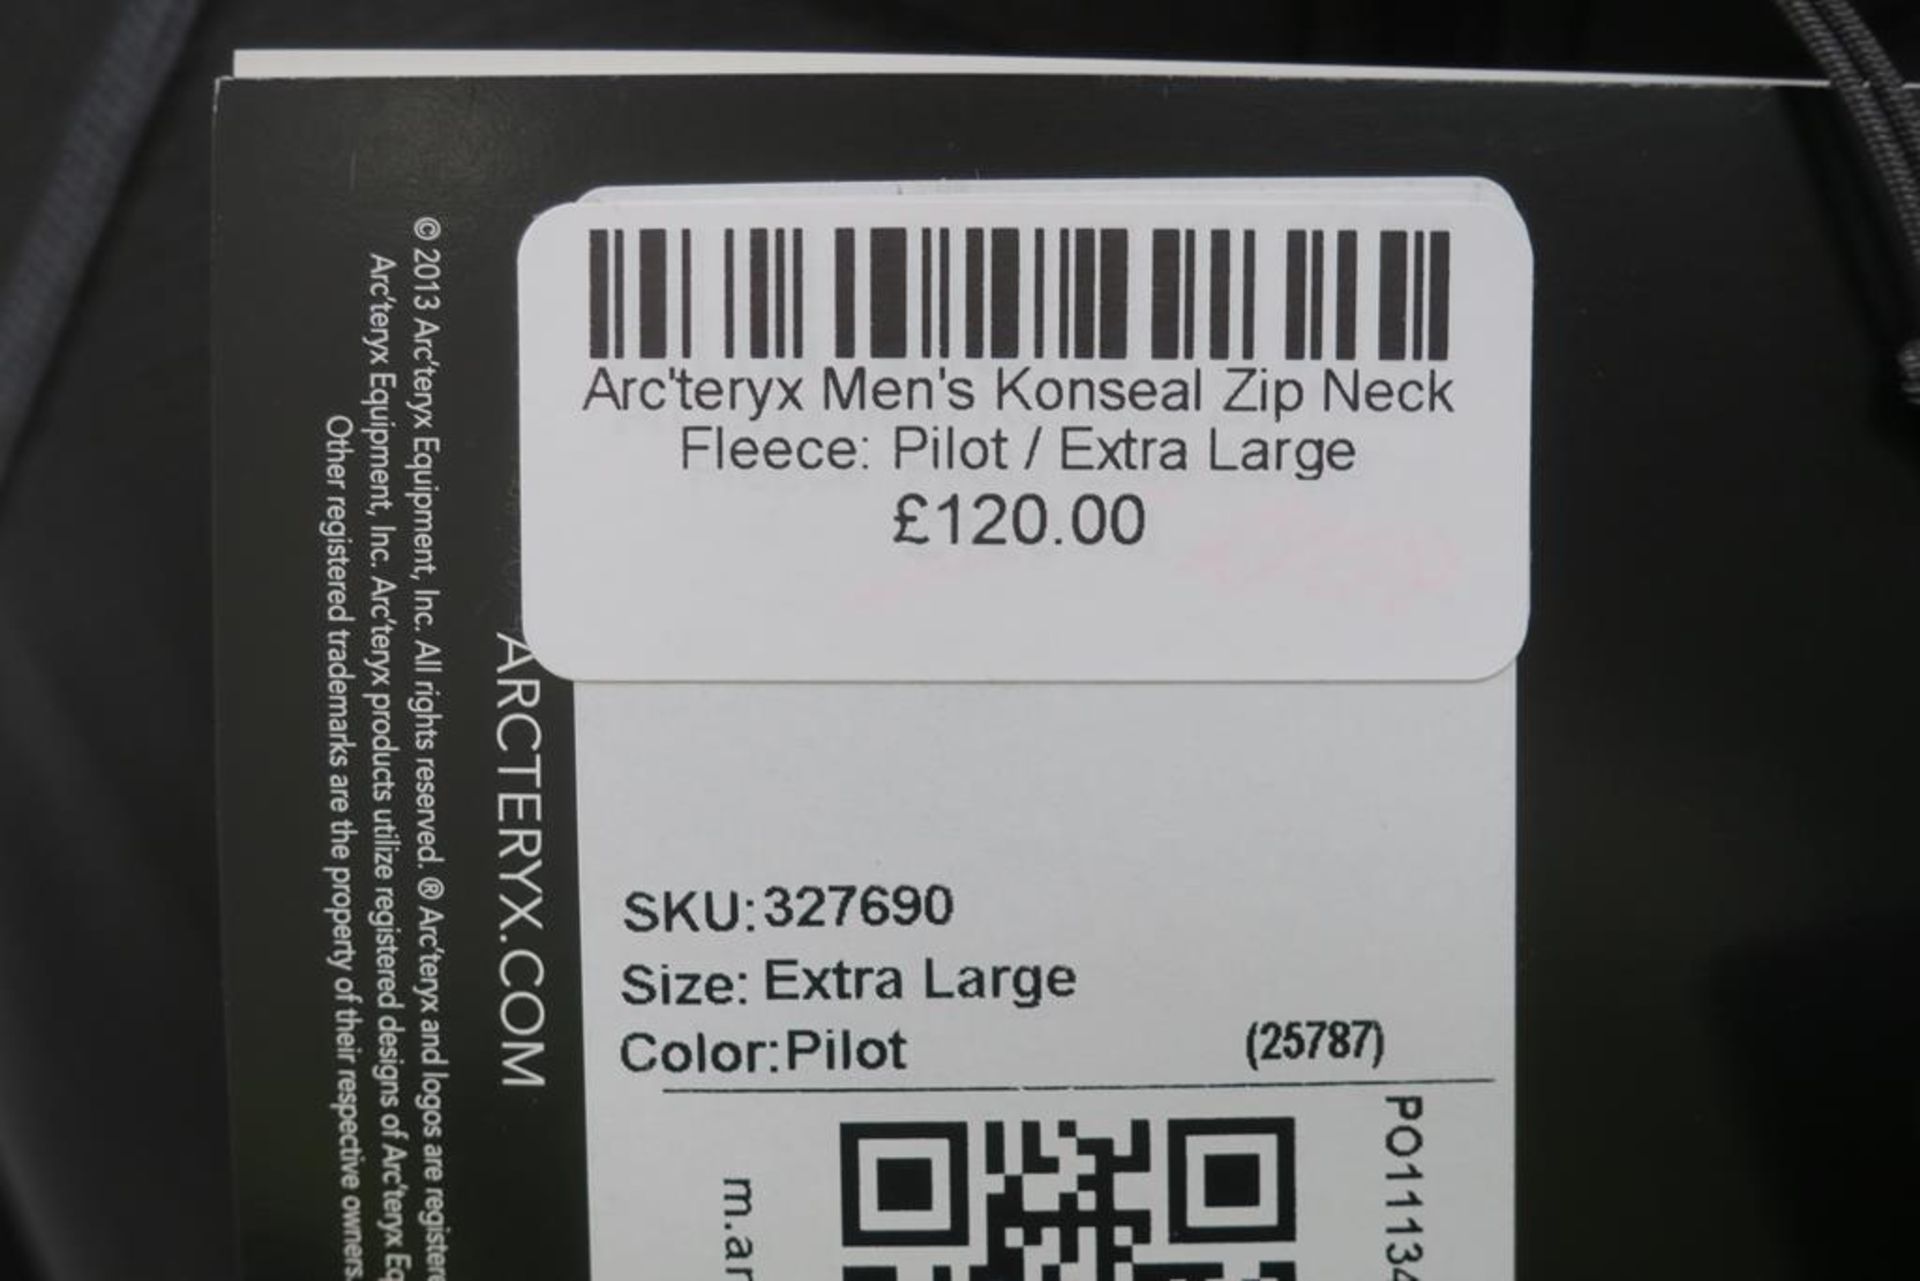 Arc'Teryx Konseal Zip Neck Mens Fleece in Pilot size Extra Large - Image 3 of 3